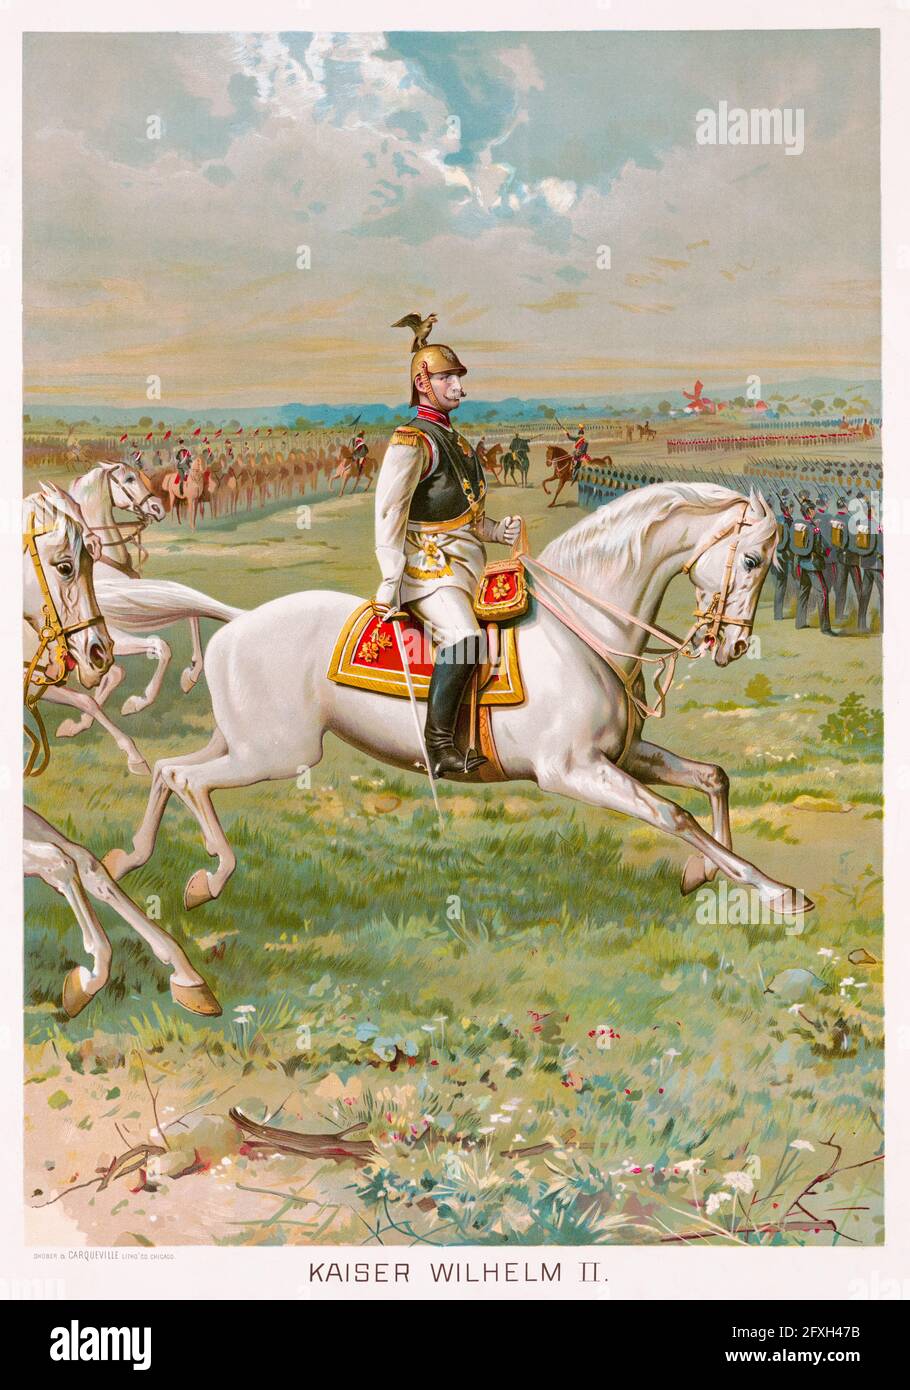 Wilhelm II. (1859-1941) (Wilhelm II.) in Militäruniform zu Pferd, der letzte deutsche Kaiser (Kaiser) und König von Preußen (1888-1918), Reiterportrait von Shober & Carqueville Litho, um 1891 Stockfoto